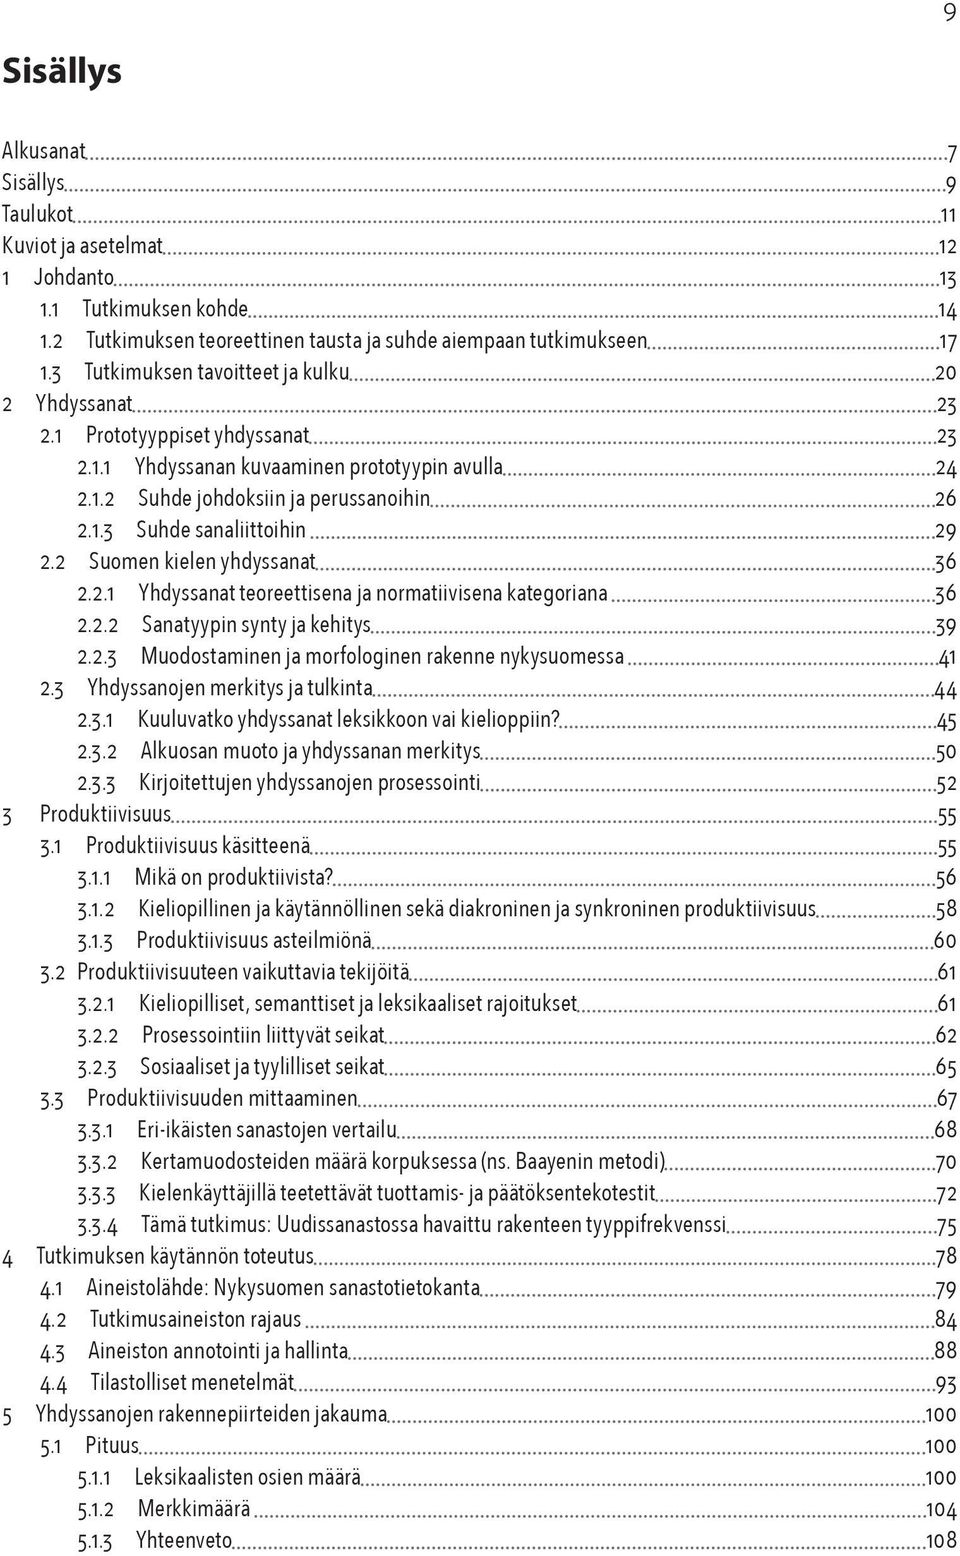 2 Suomen kielen yhdyssanat 36 2.2.1 Yhdyssanat teoreettisena ja normatiivisena kategoriana 36 2.2.2 Sanatyypin synty ja kehitys 39 2.2.3 Muodostaminen ja morfologinen rakenne nykysuomessa 41 2.